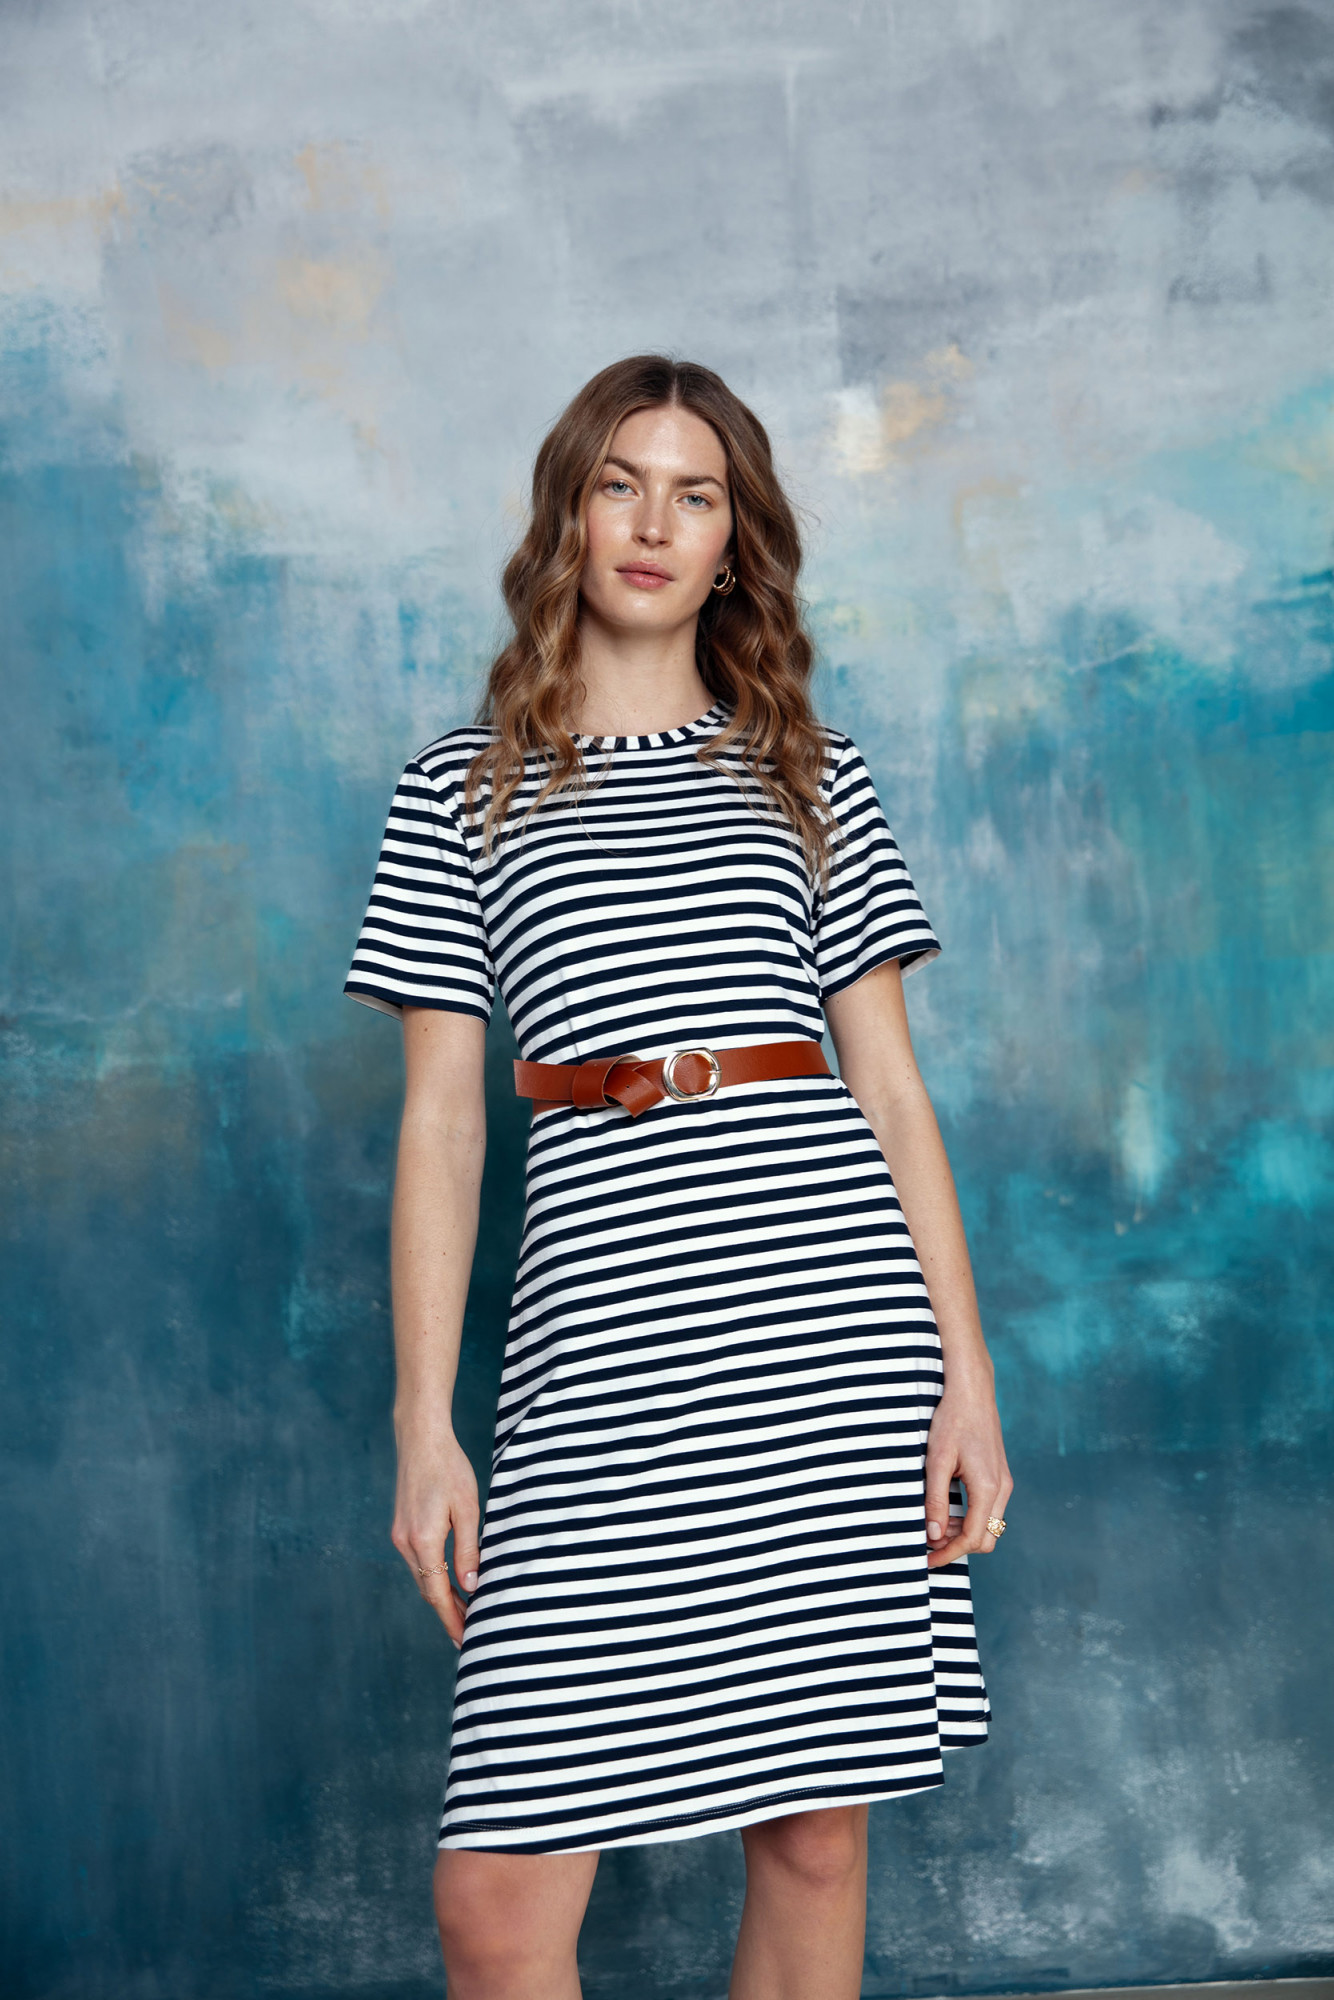 Dámské šaty Stylove Dress S306 Model 1 Velikost: L, Barvy: pruhované tm.modrá/bílá